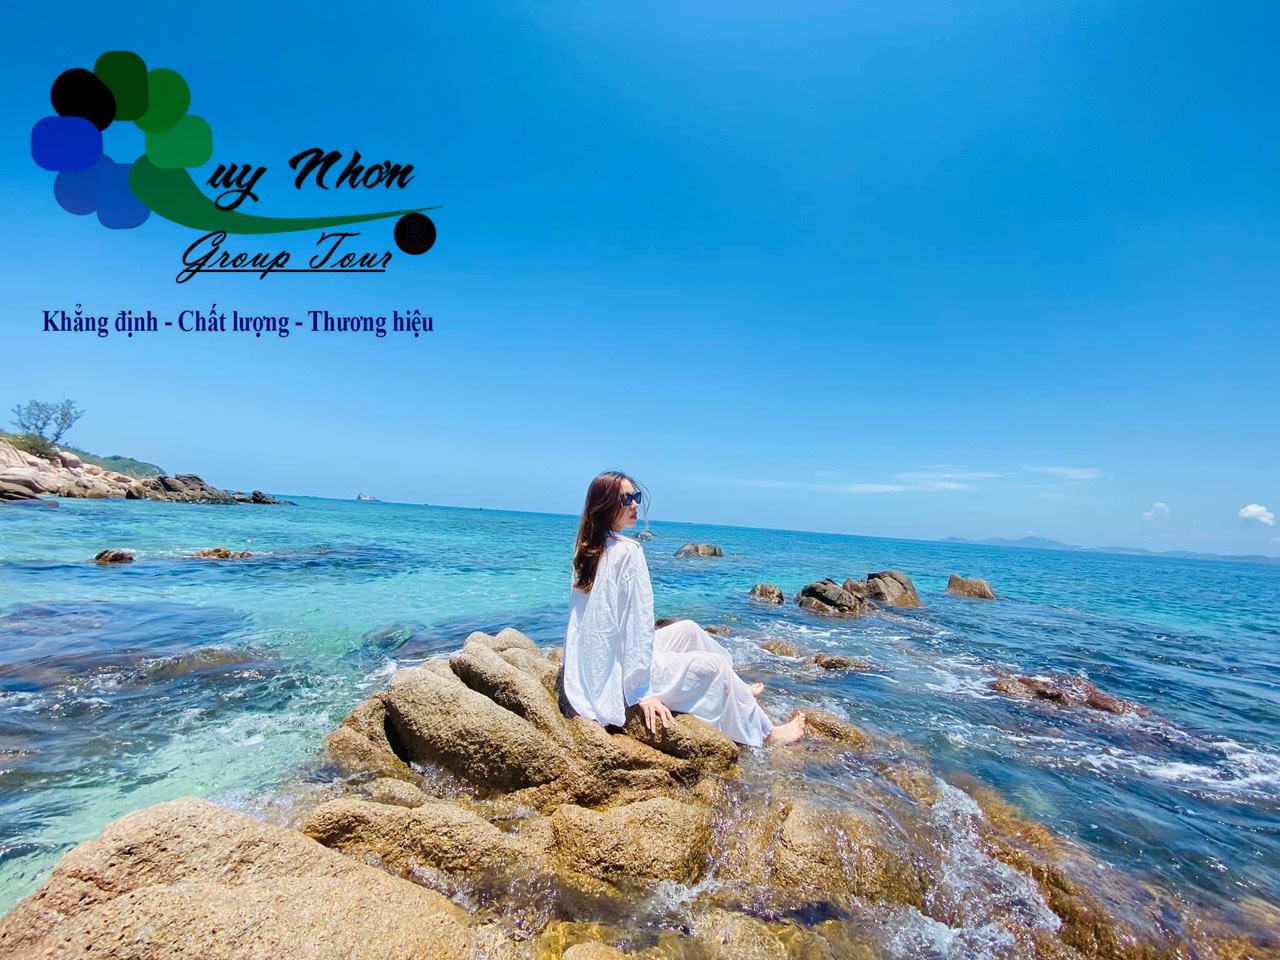 Land Tour Cù Lao Xanh – Quy Nhơn Group Tour Hân Hạnh Đồng Hành